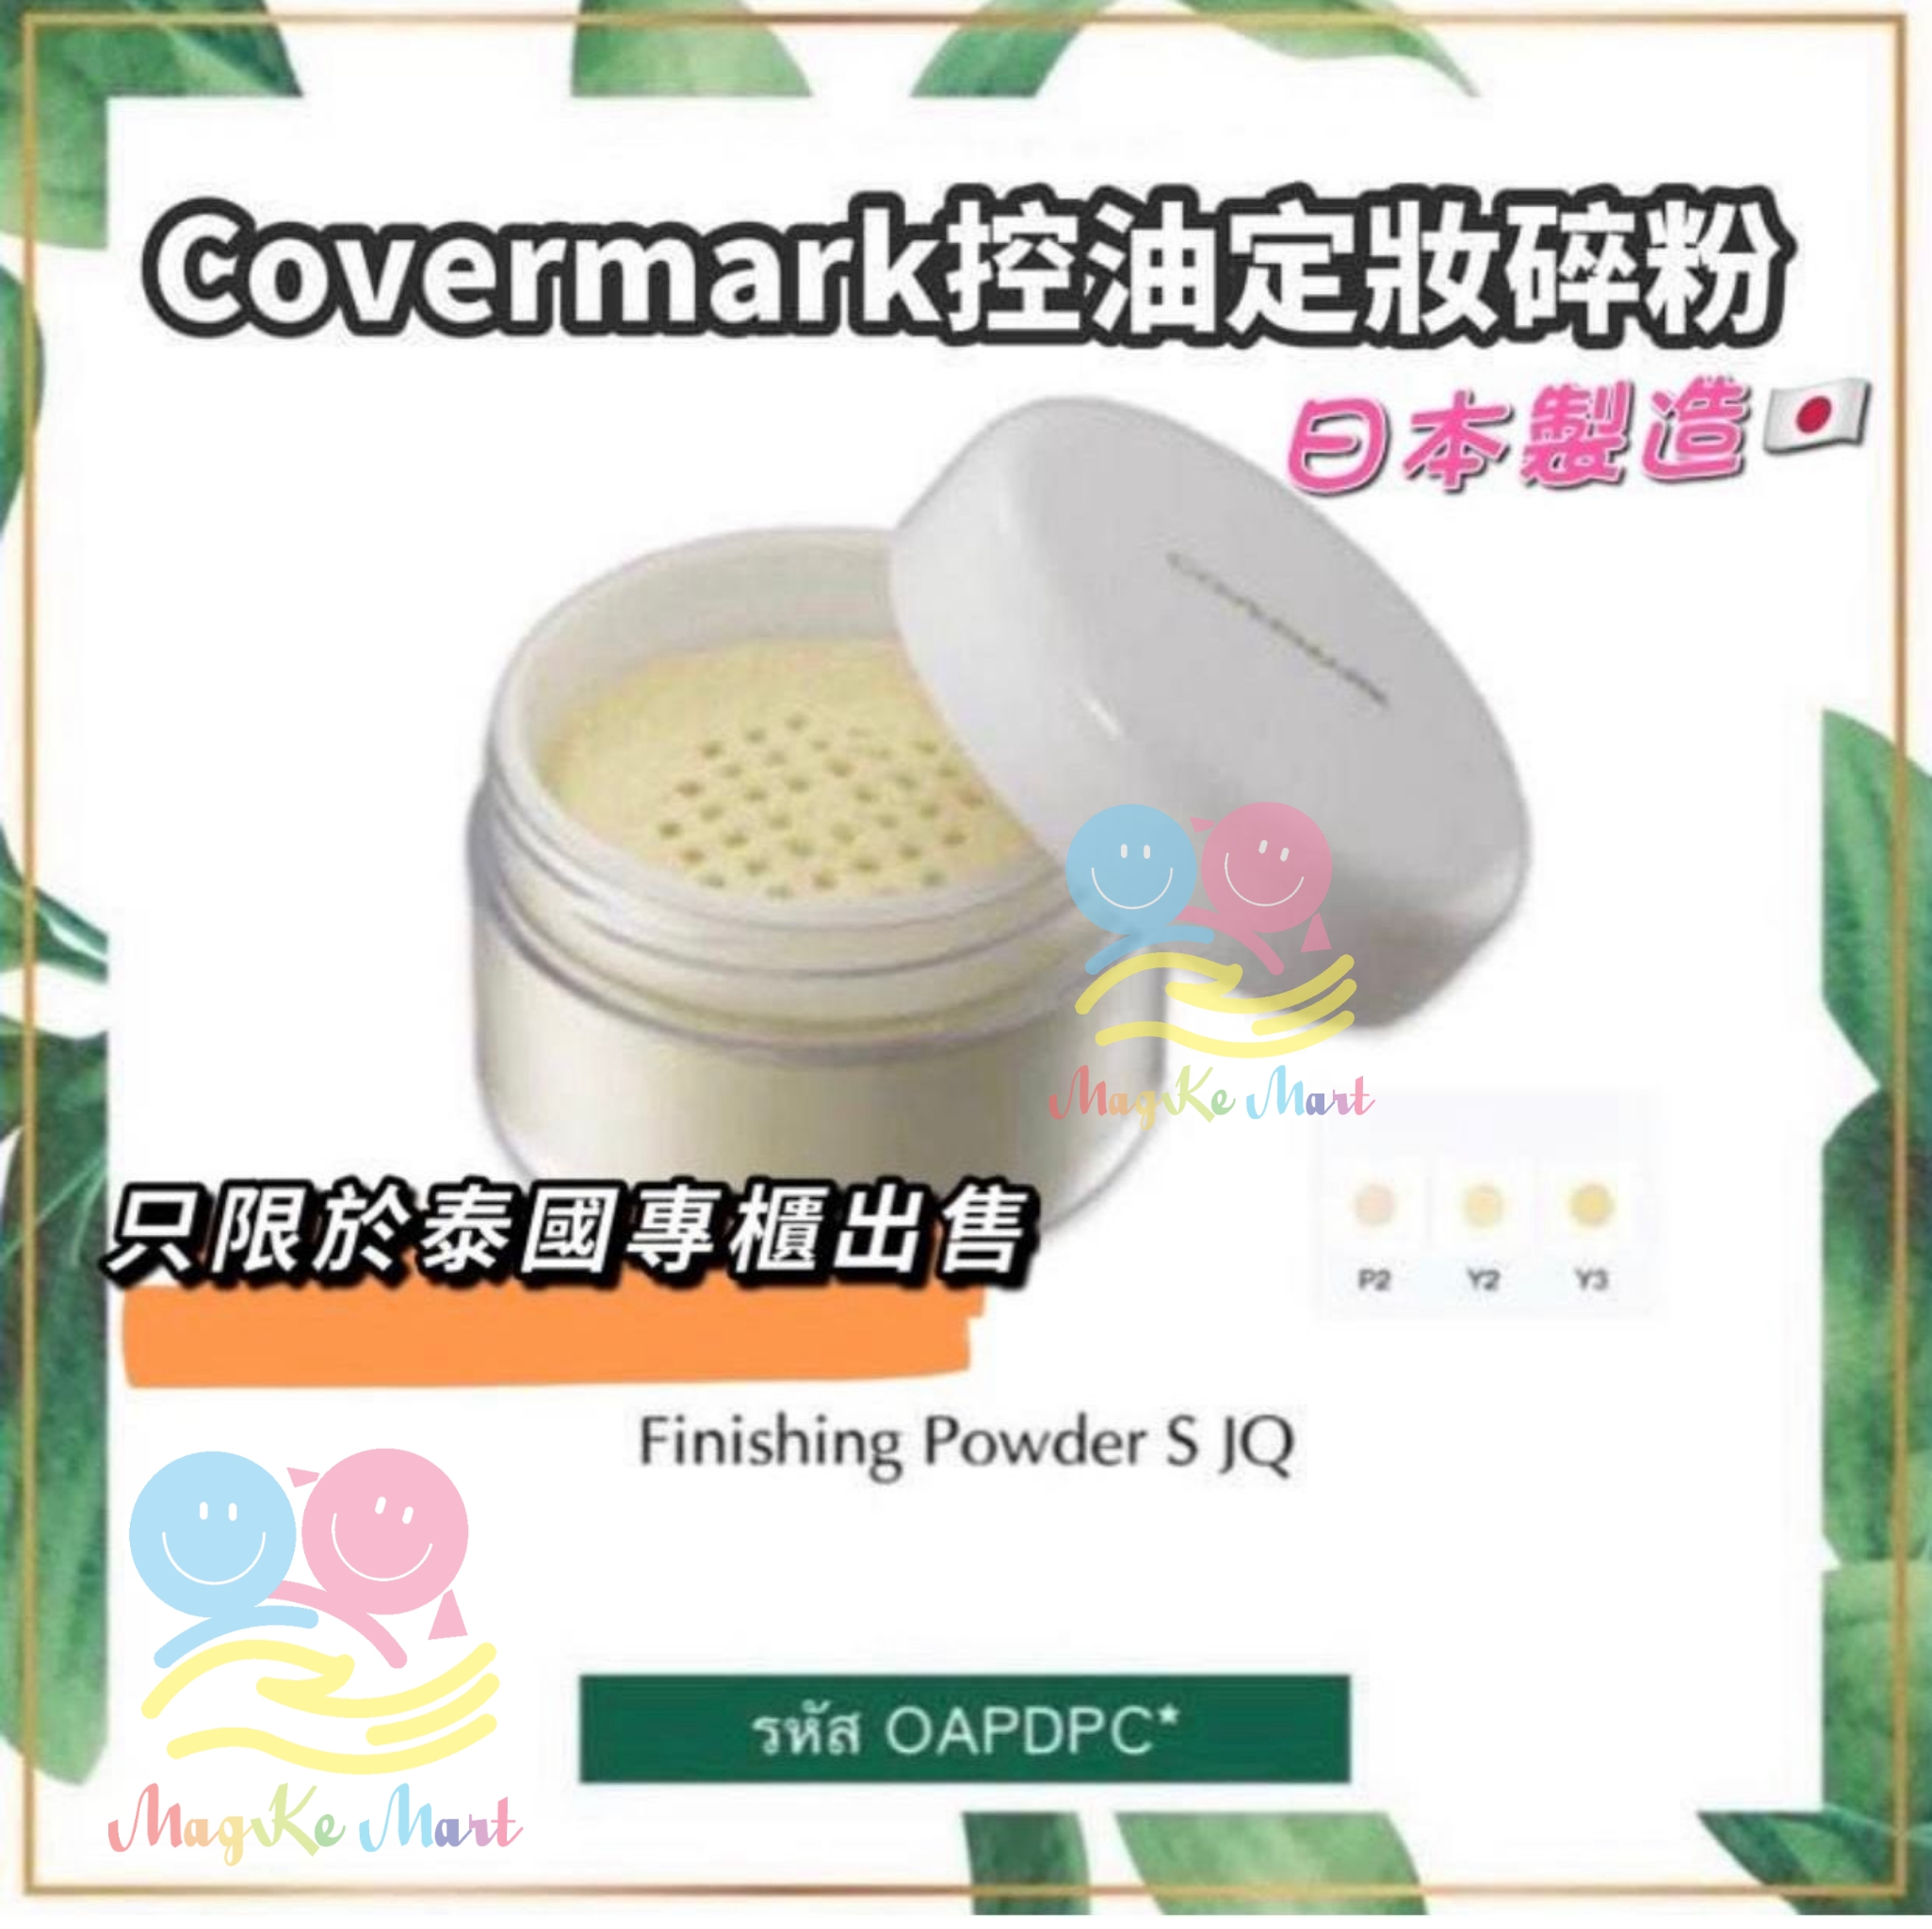 泰國 Covermark 控油定妝碎粉 30g (C) Y3 適合健康膚色